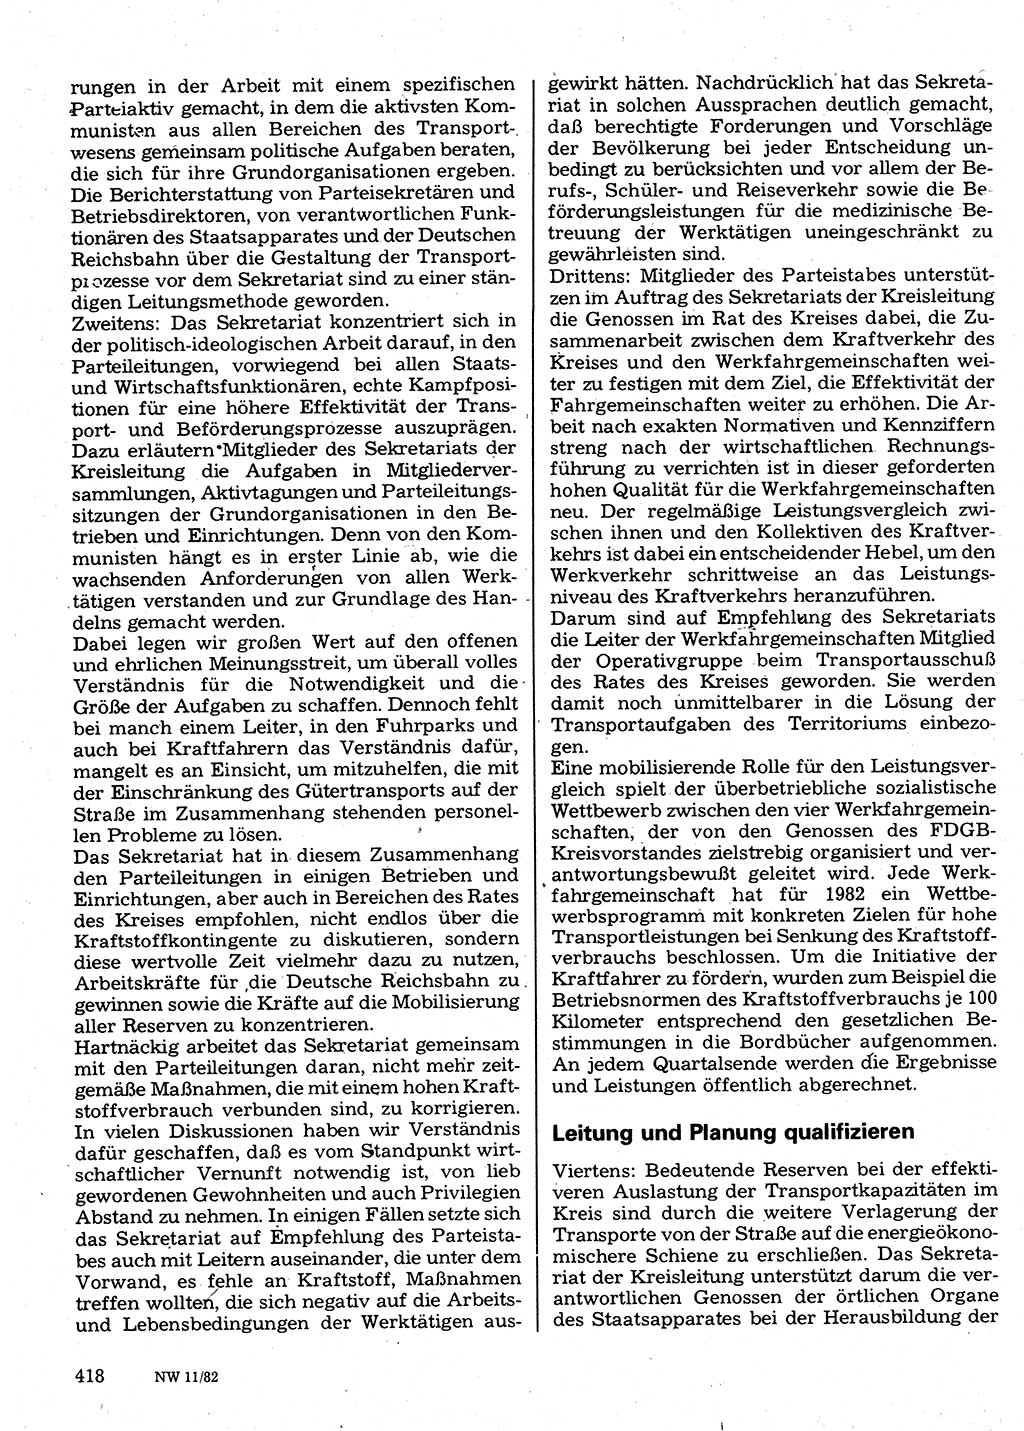 Neuer Weg (NW), Organ des Zentralkomitees (ZK) der SED (Sozialistische Einheitspartei Deutschlands) für Fragen des Parteilebens, 37. Jahrgang [Deutsche Demokratische Republik (DDR)] 1982, Seite 418 (NW ZK SED DDR 1982, S. 418)